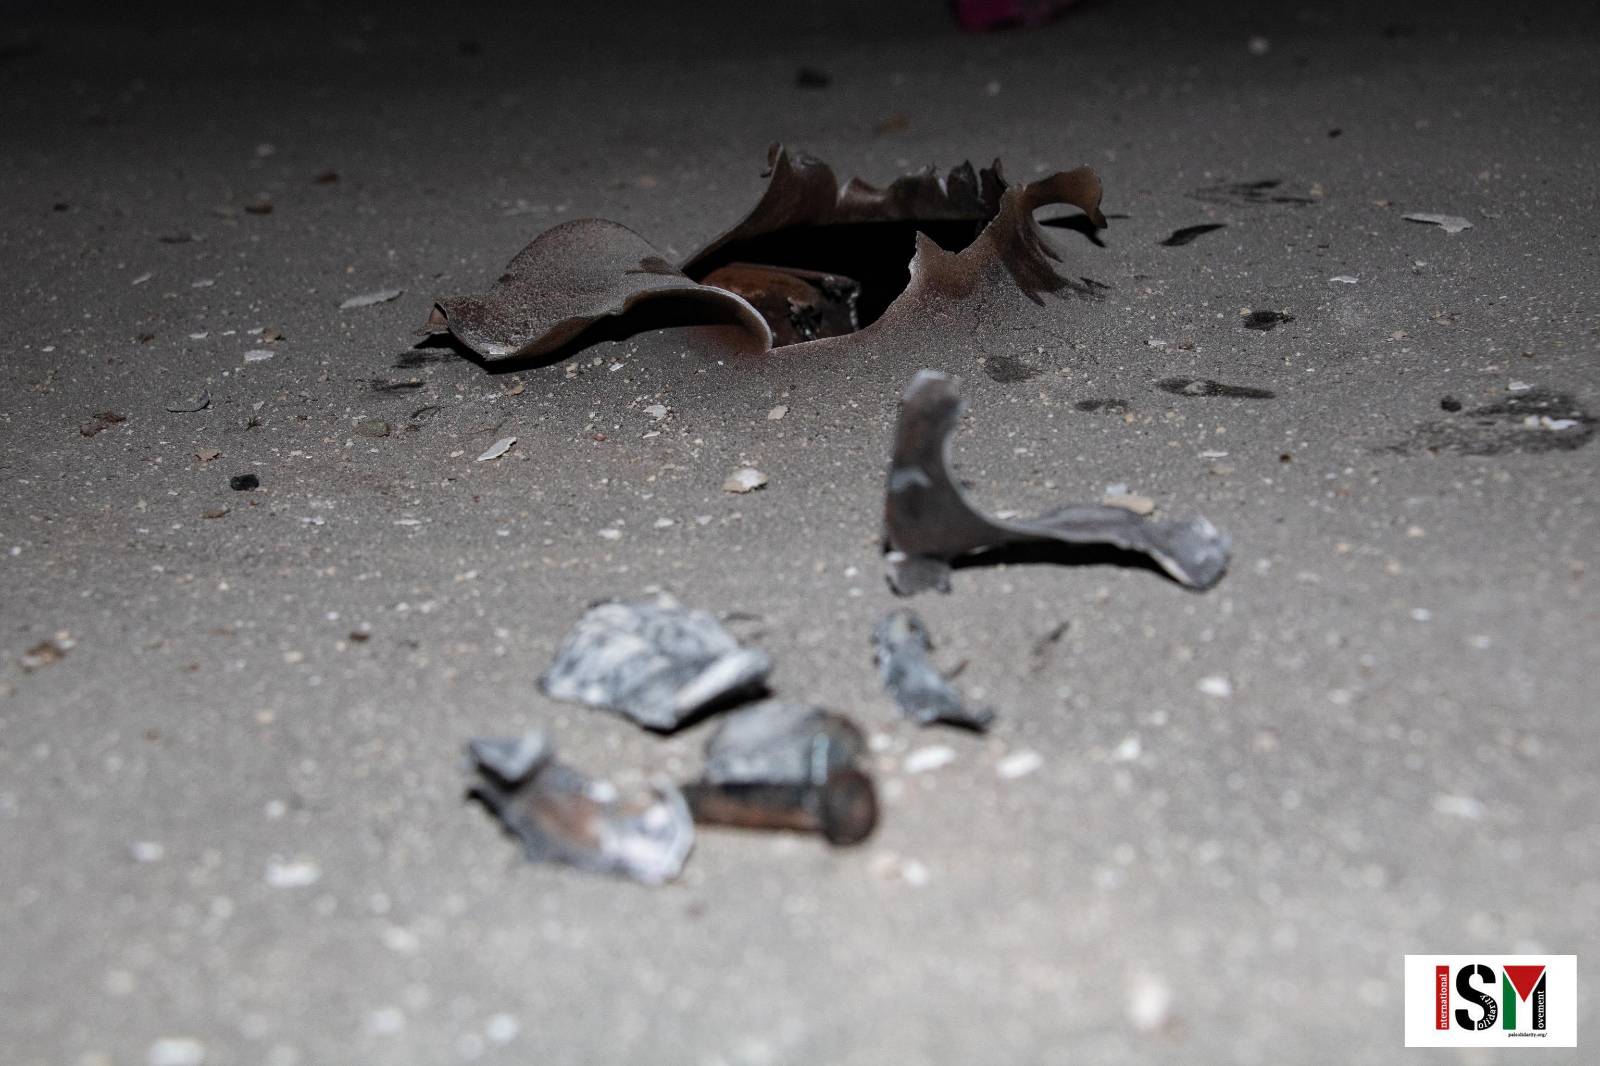 Missile fragments in Beqa al Sharqiya